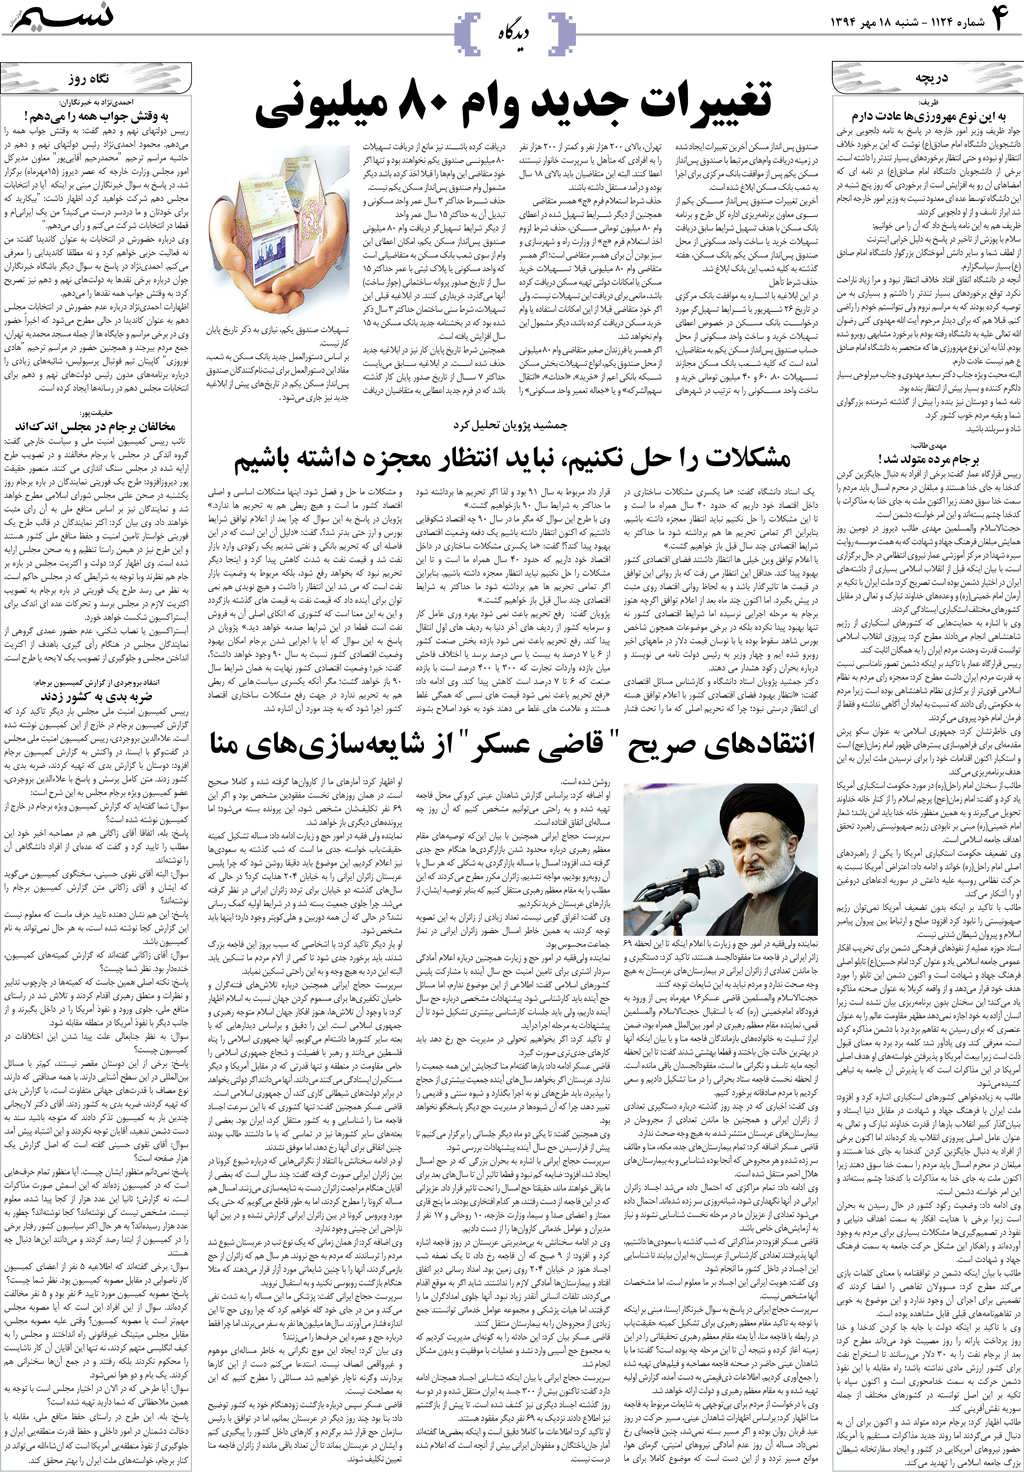 صفحه دیدگاه روزنامه نسیم شماره 1124